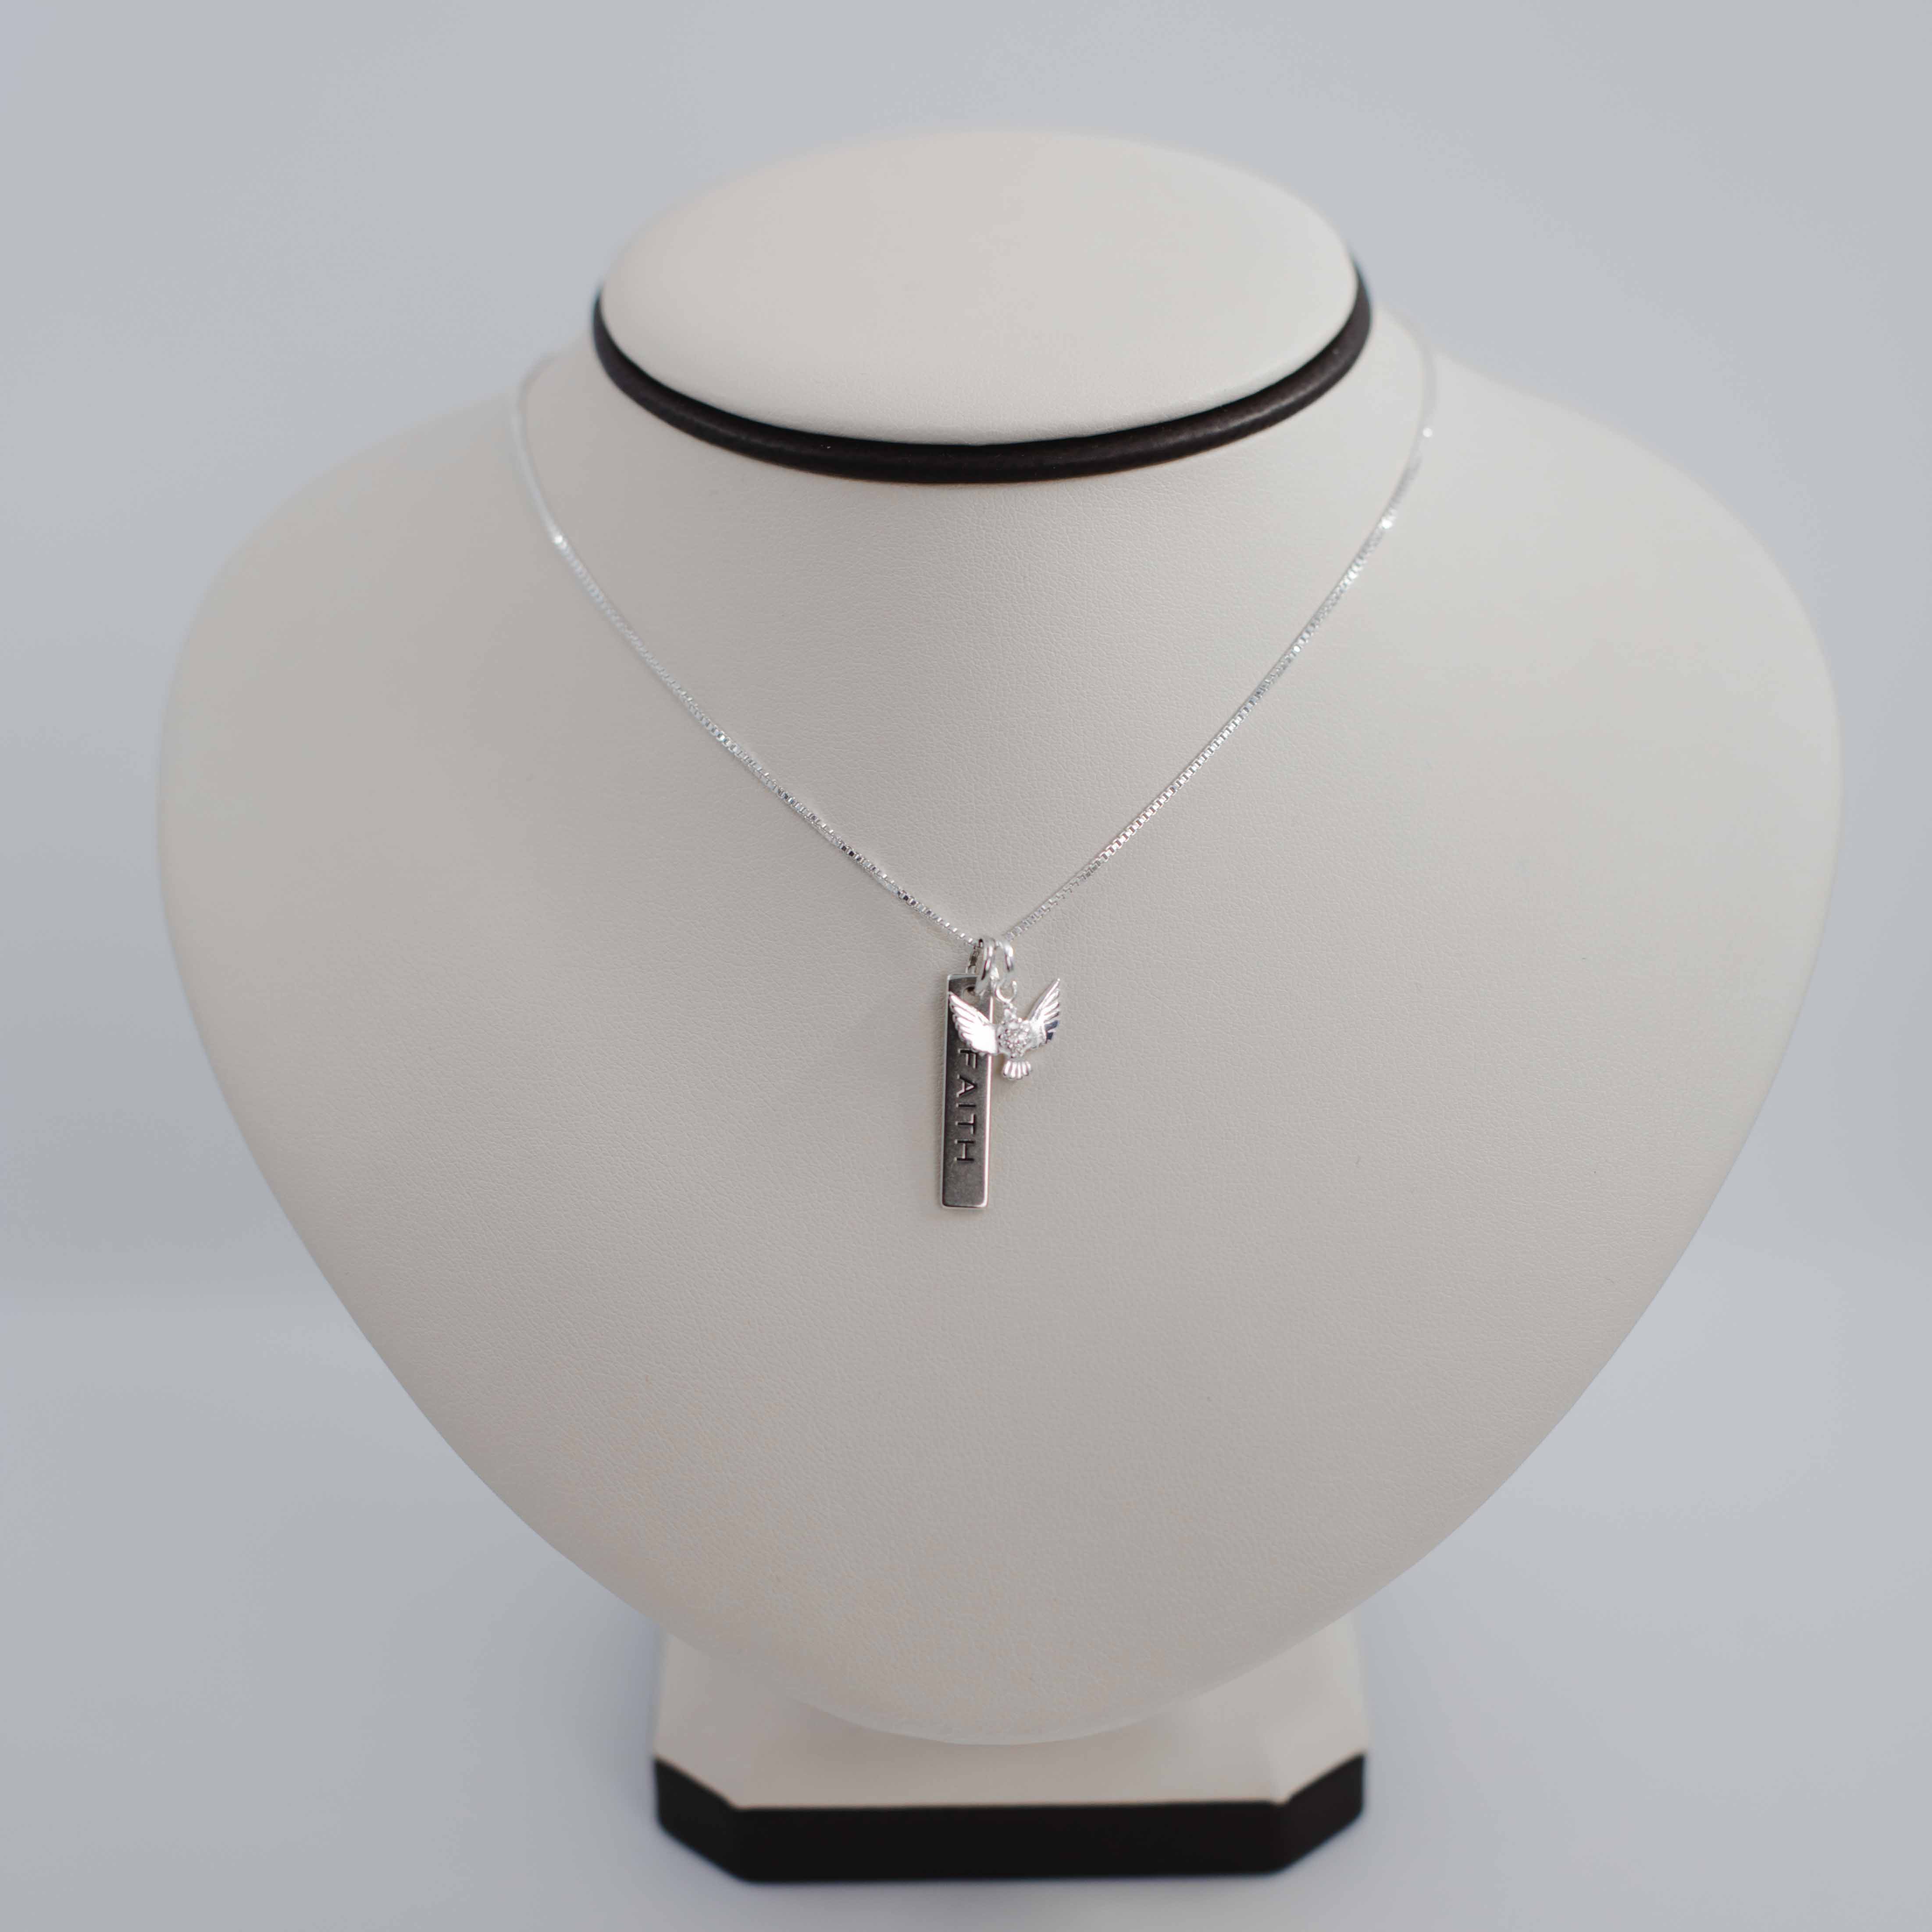 Faith silver necklace